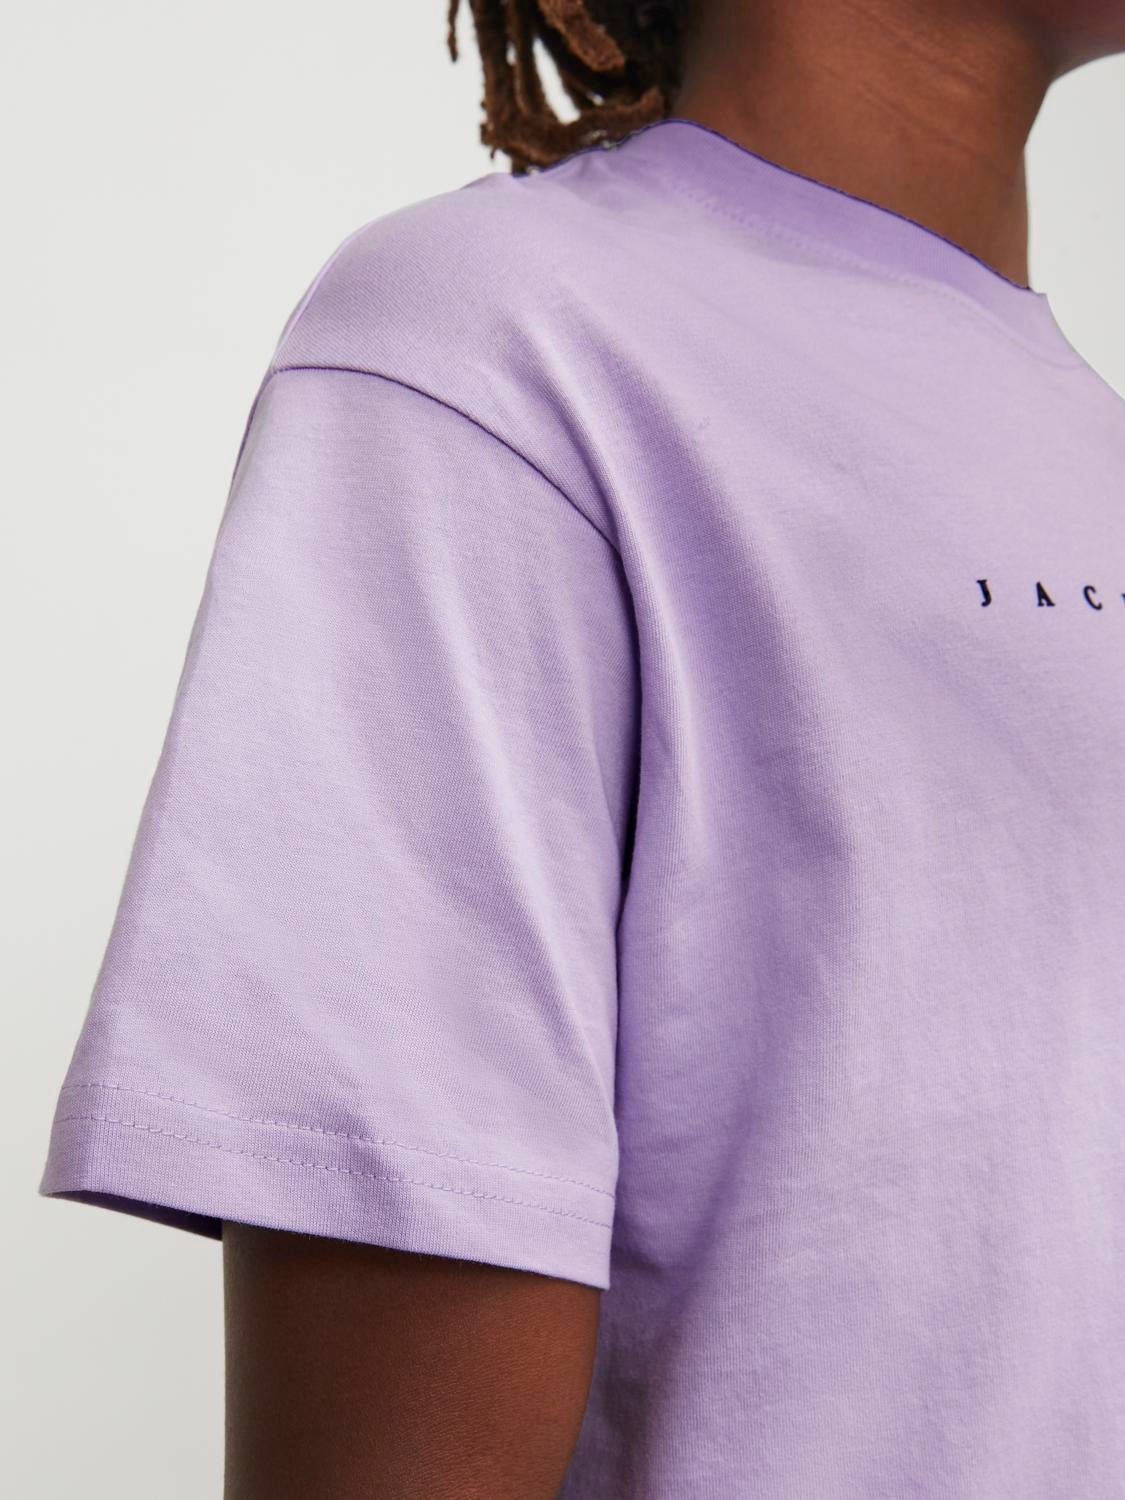 Jack & Jones T-shirt Logo Pour les garçons -Purple Rose - 12237435